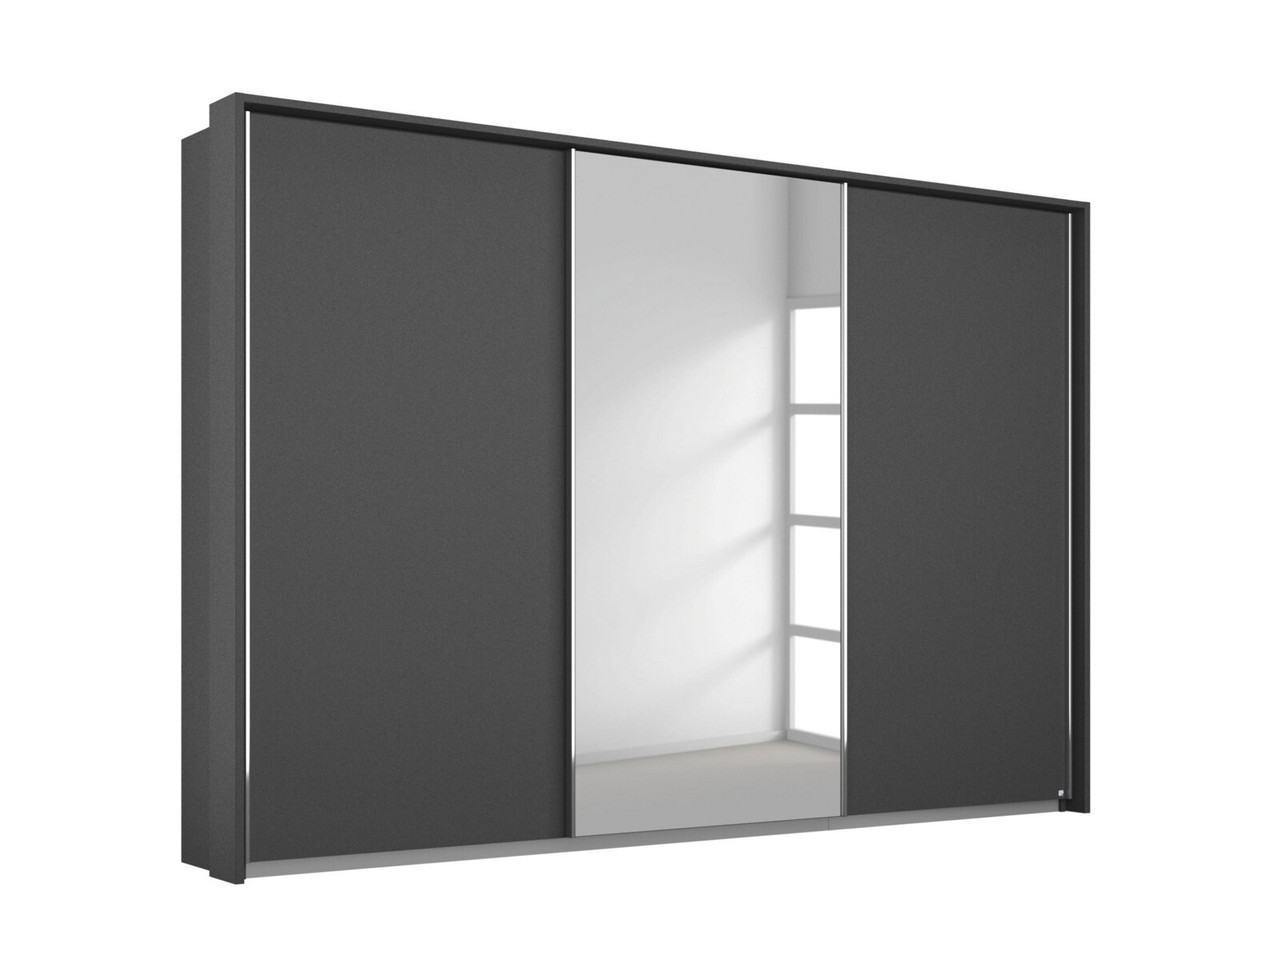 Lorenzo 3 Door Slider Wardrobe With 1 Mirror 3 Door Sliding Metallic Grey   Metallic Grey